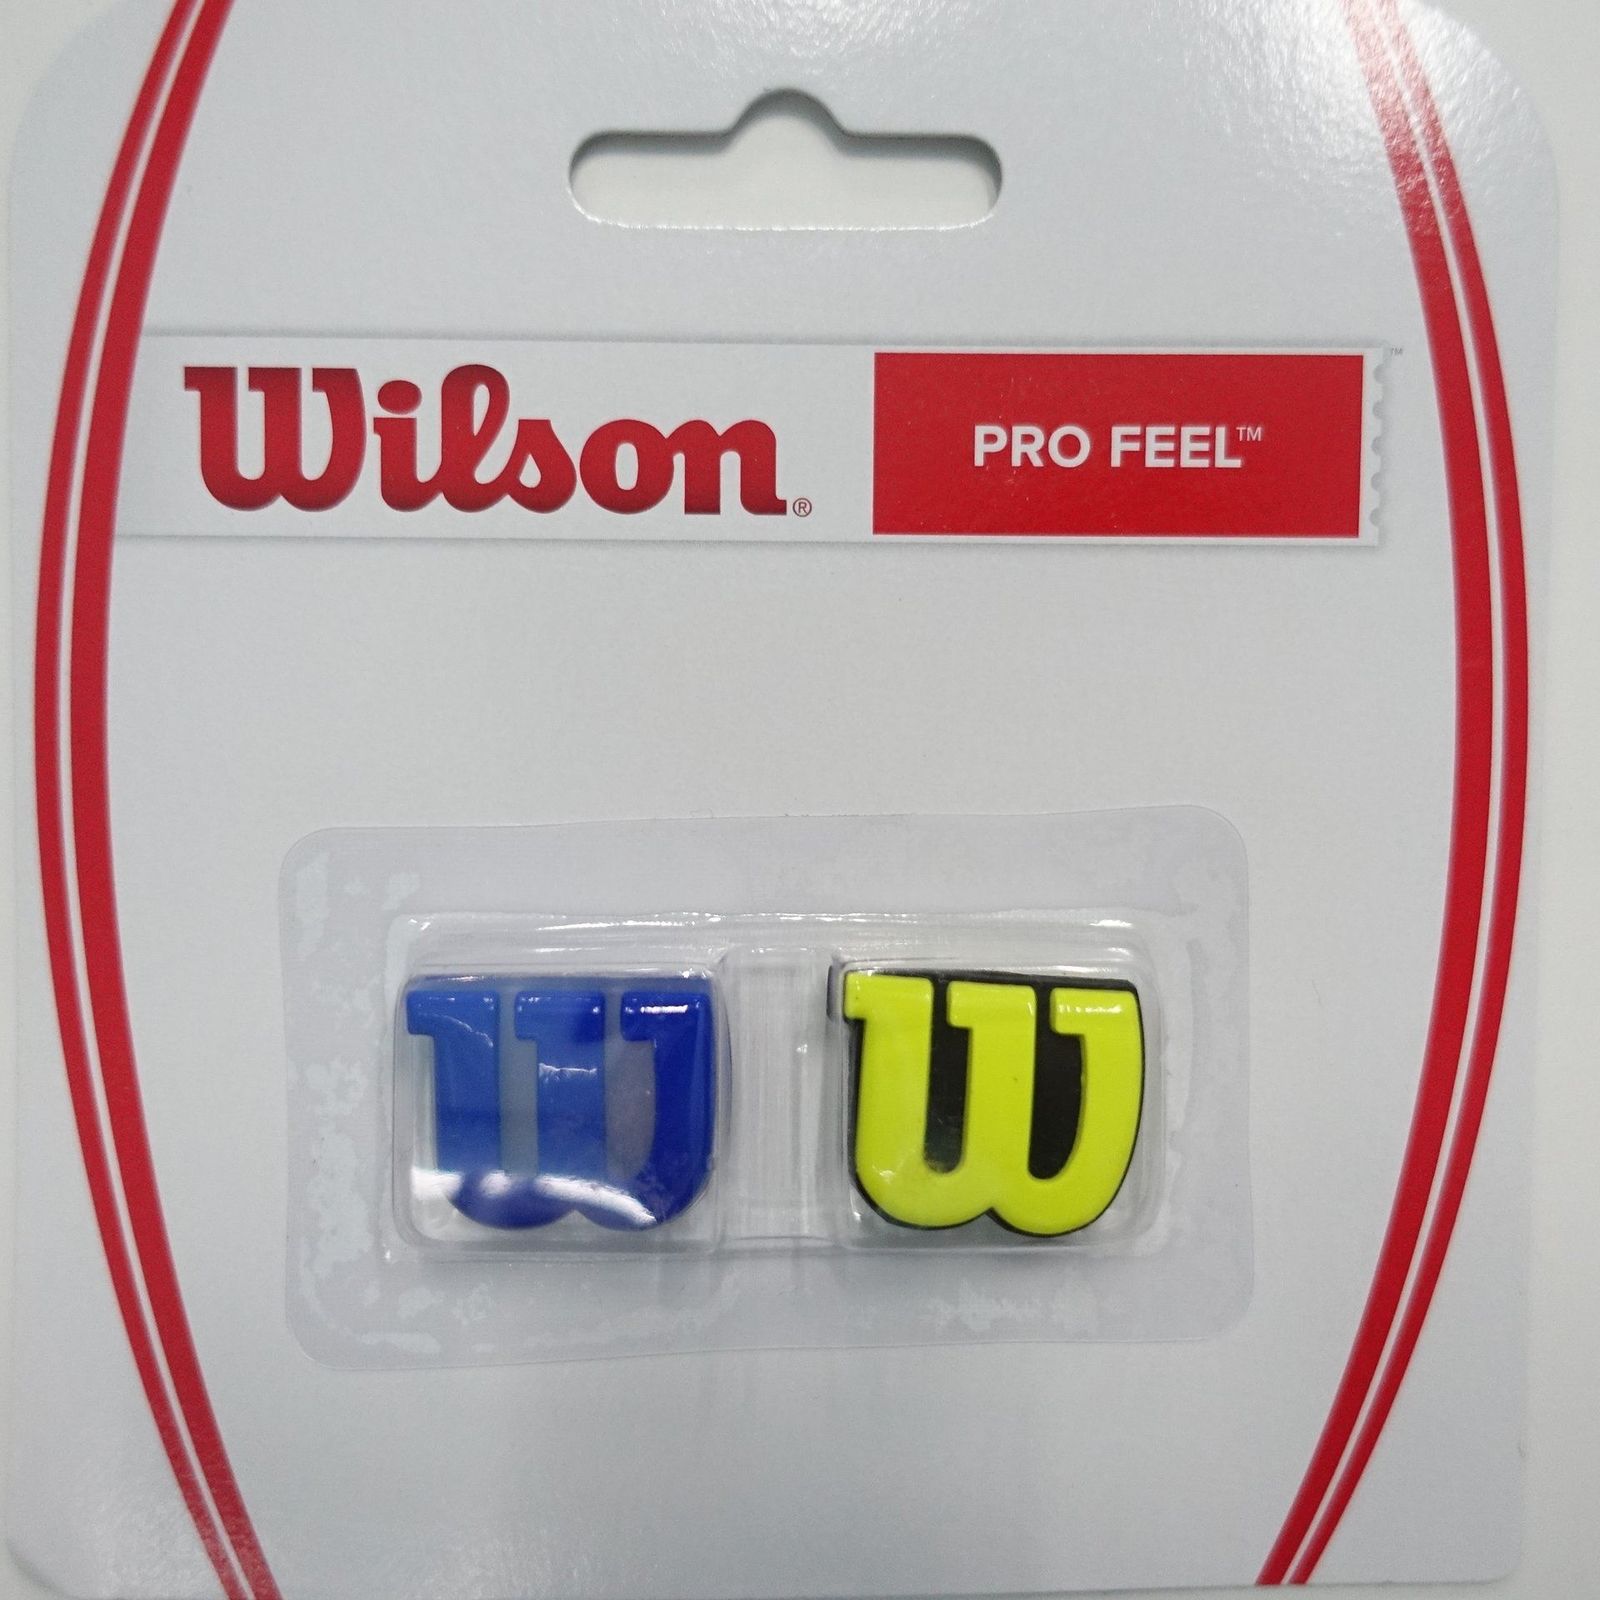 Feeling pro. Виброгаситель Wilson Pro feel. Виброгаситель для теннисной ракетки Wilson. Виброгаситель Wilson Shock Shield Dampener. Виброгаситель Wilson голубой.